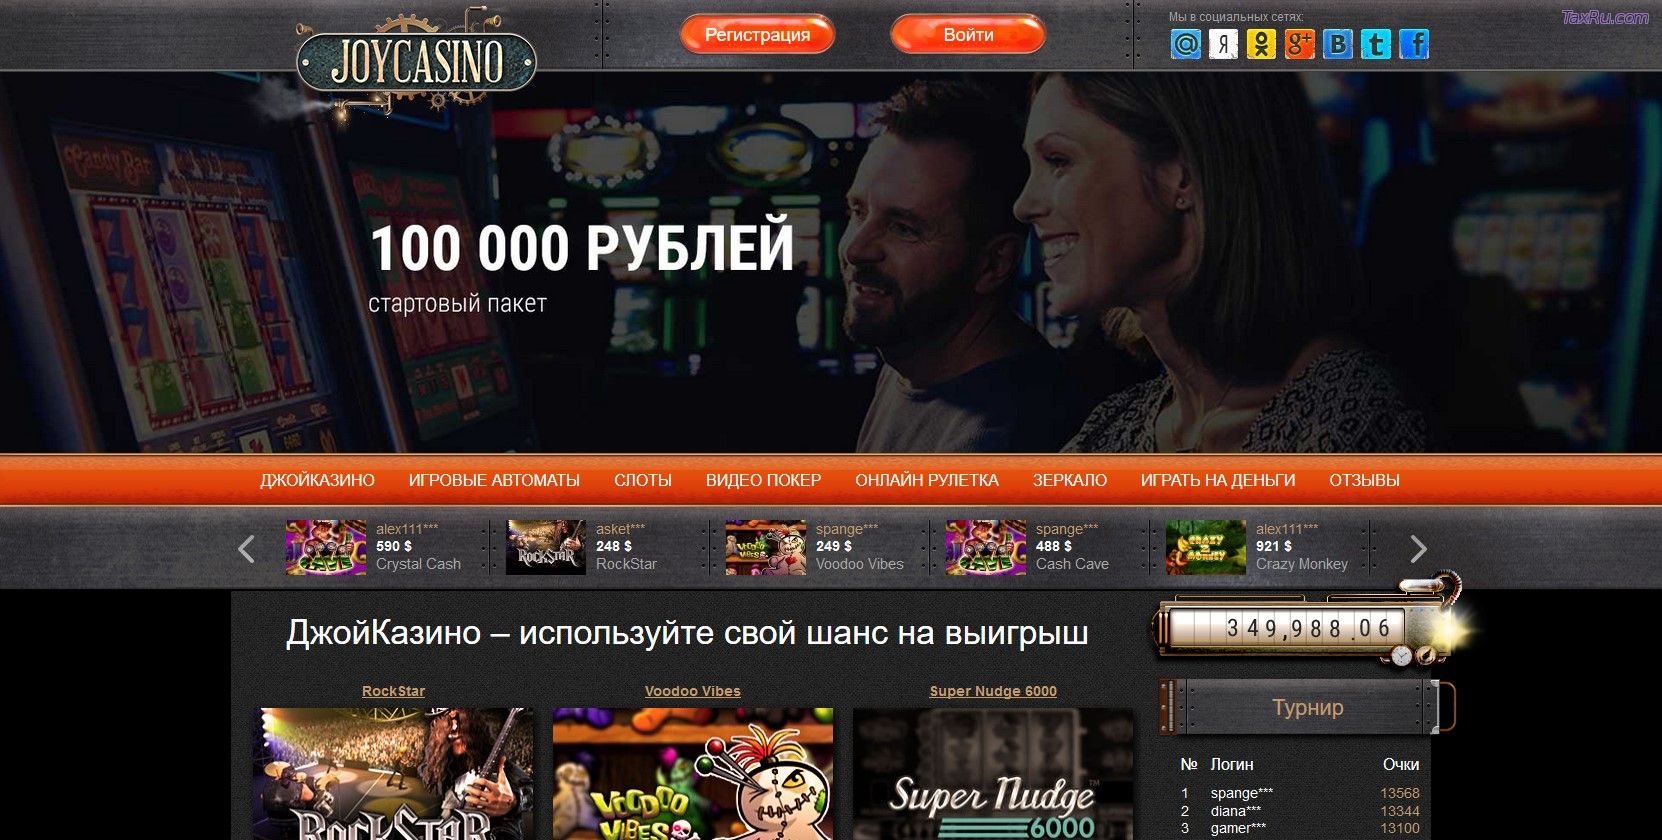 Покер онлайн на деньги joycasino stream промокод на бездепозитный бонус джойказино